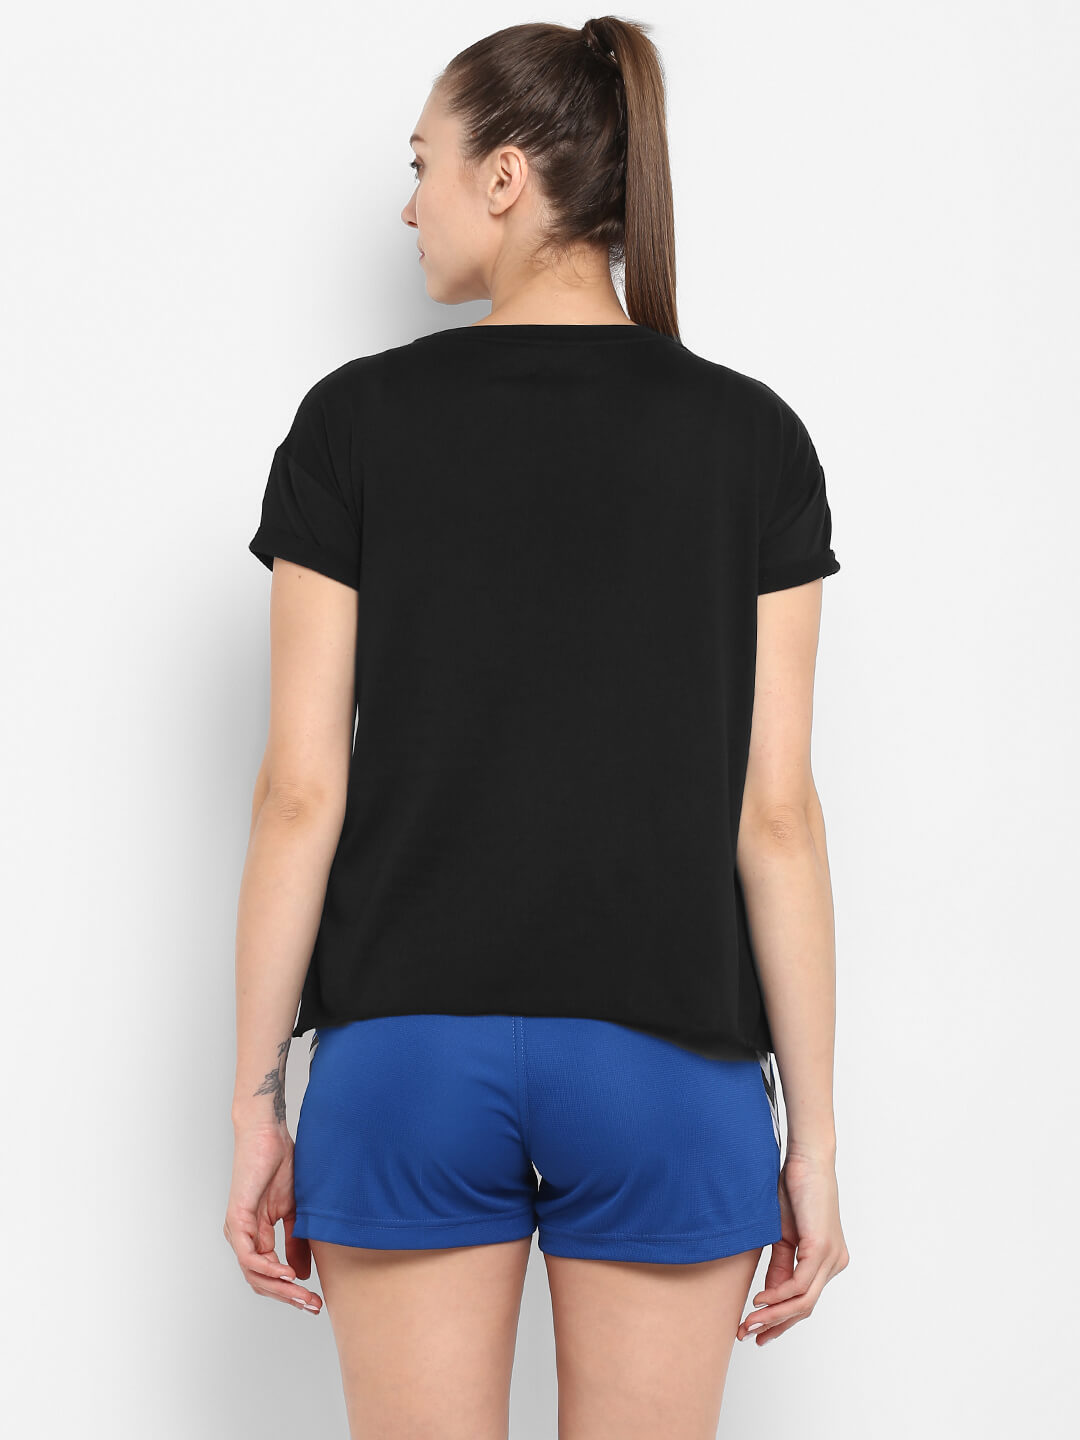 Tiora Black T-Shirt for Women